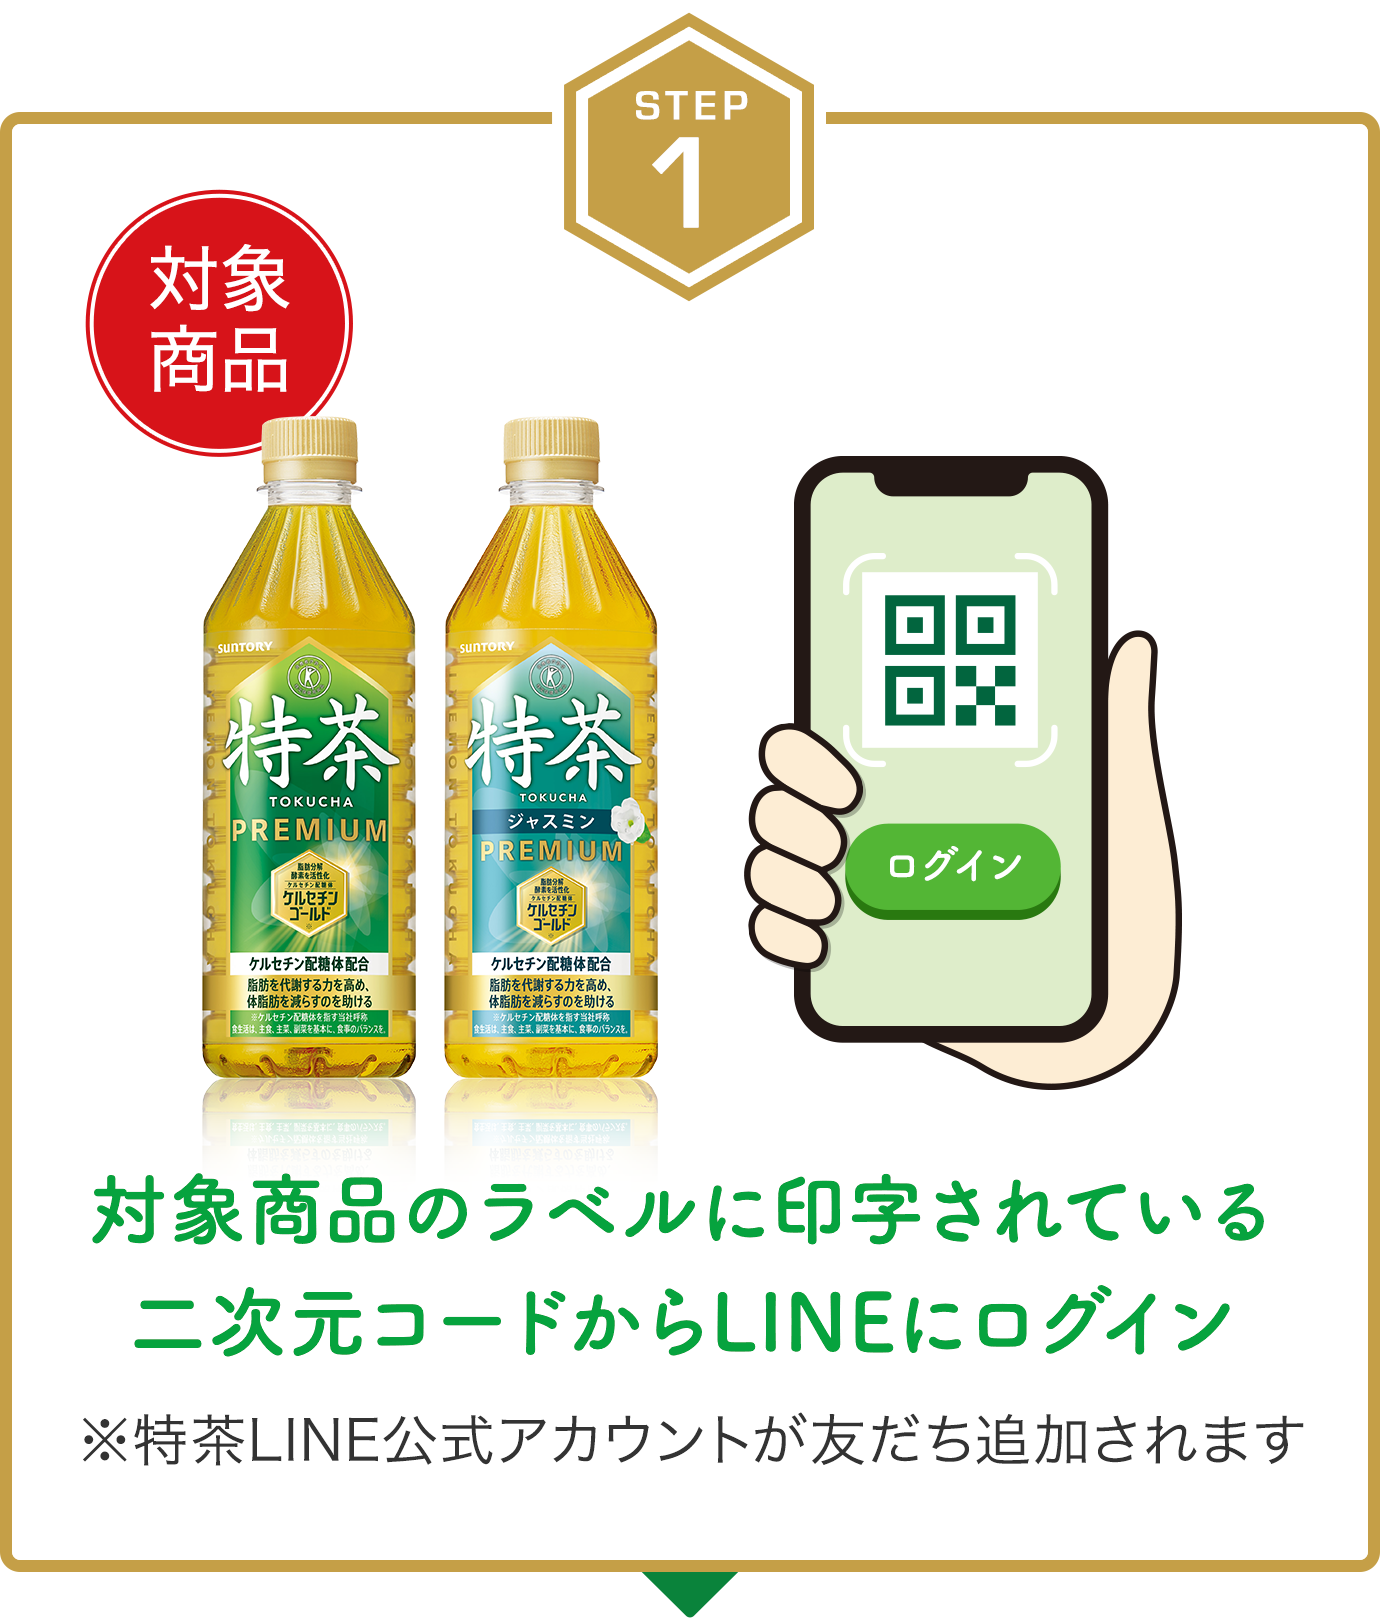 step1　対象商品のラベルに印字されているQRコード®からLINEログイン　※特茶LINE公式アカウントが友だち追加されます